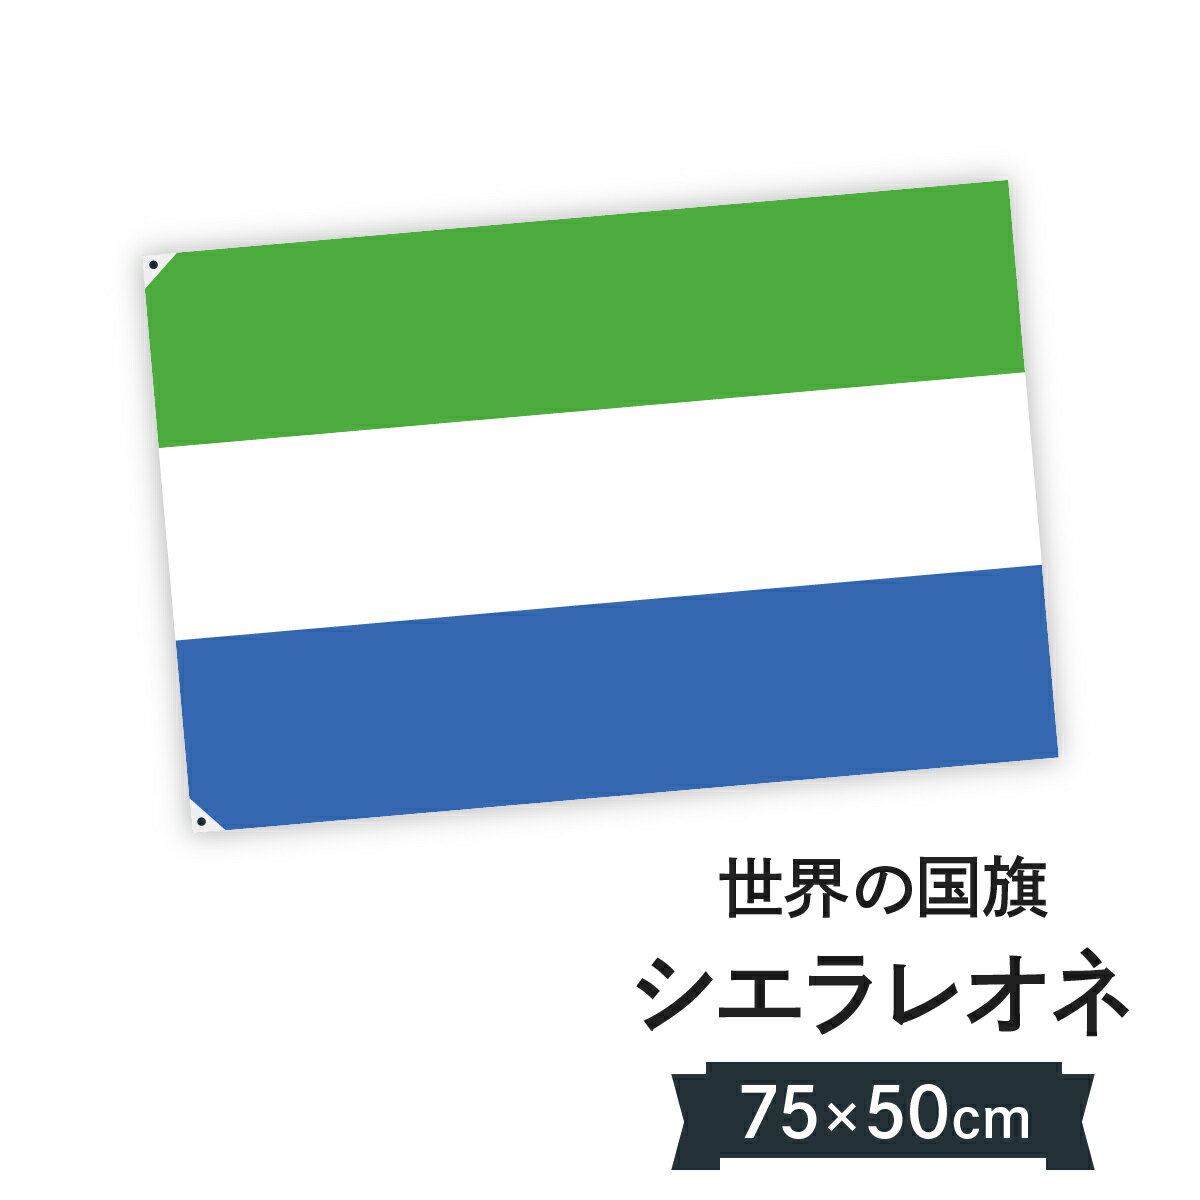 シエラレオネ共和国 国旗 W75cm H50cm